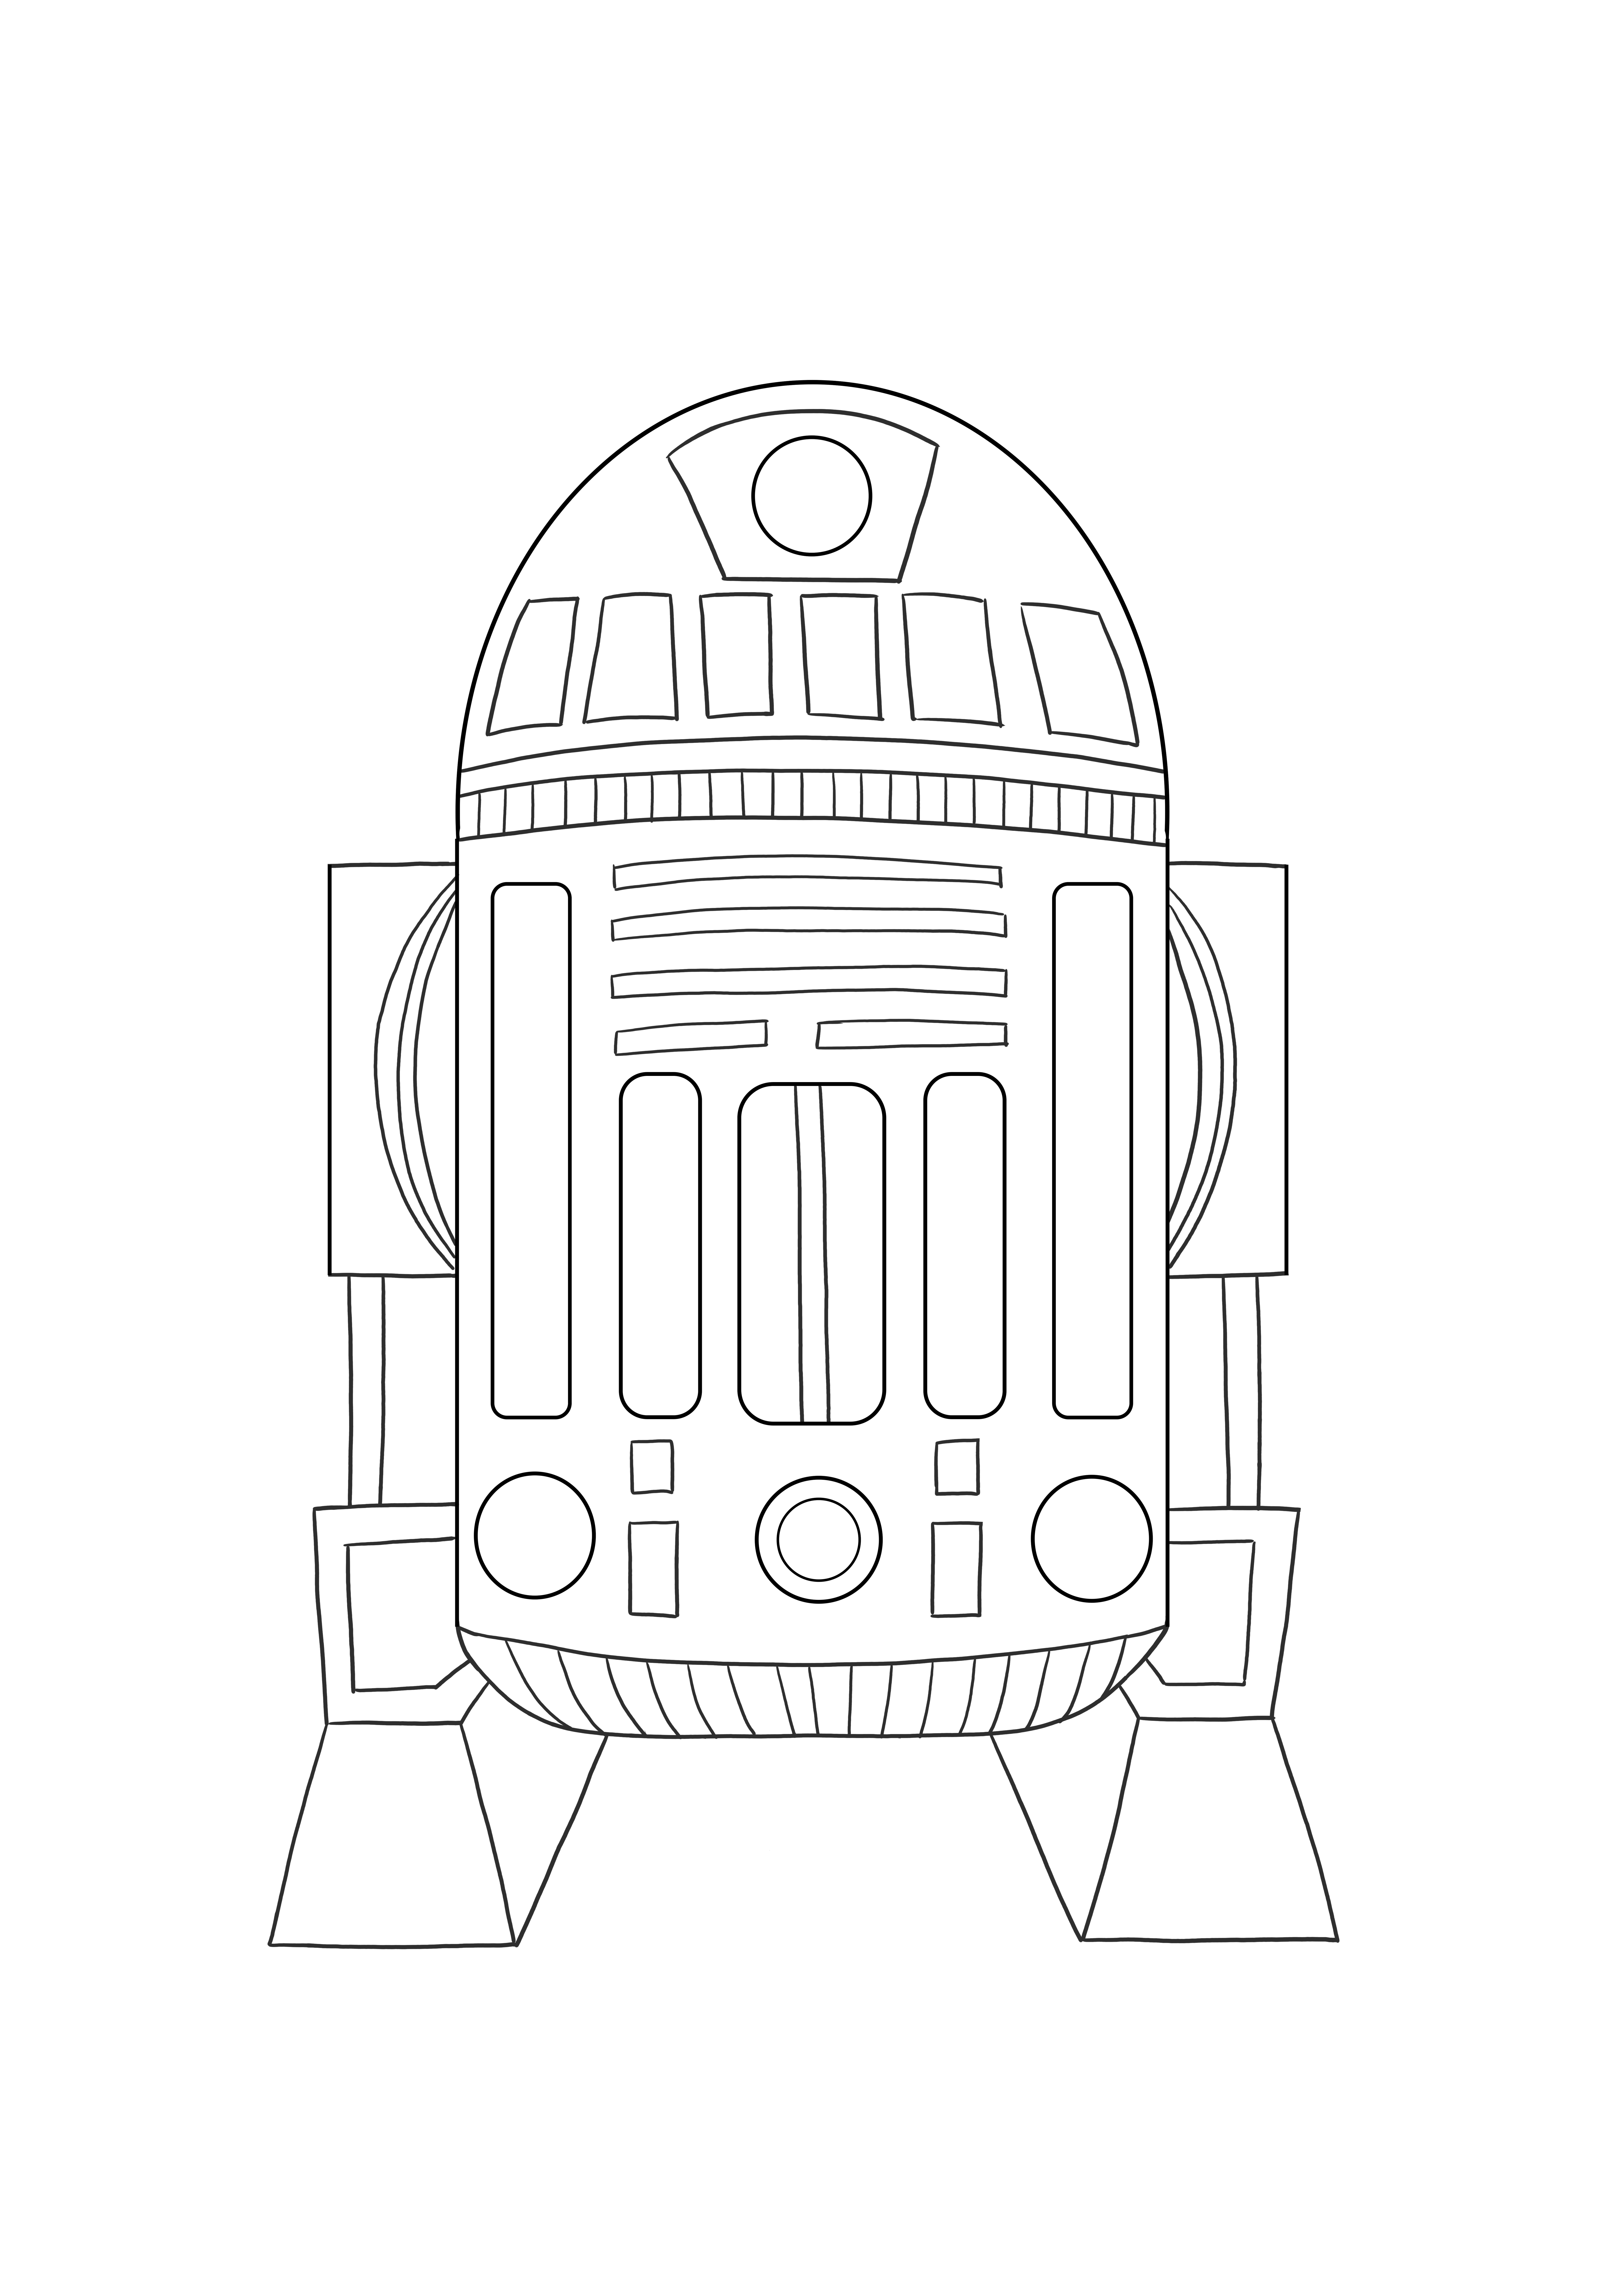 Astromed droid R2 gratis afdrukbare afbeelding om in te kleuren voor kinderen kleurplaat